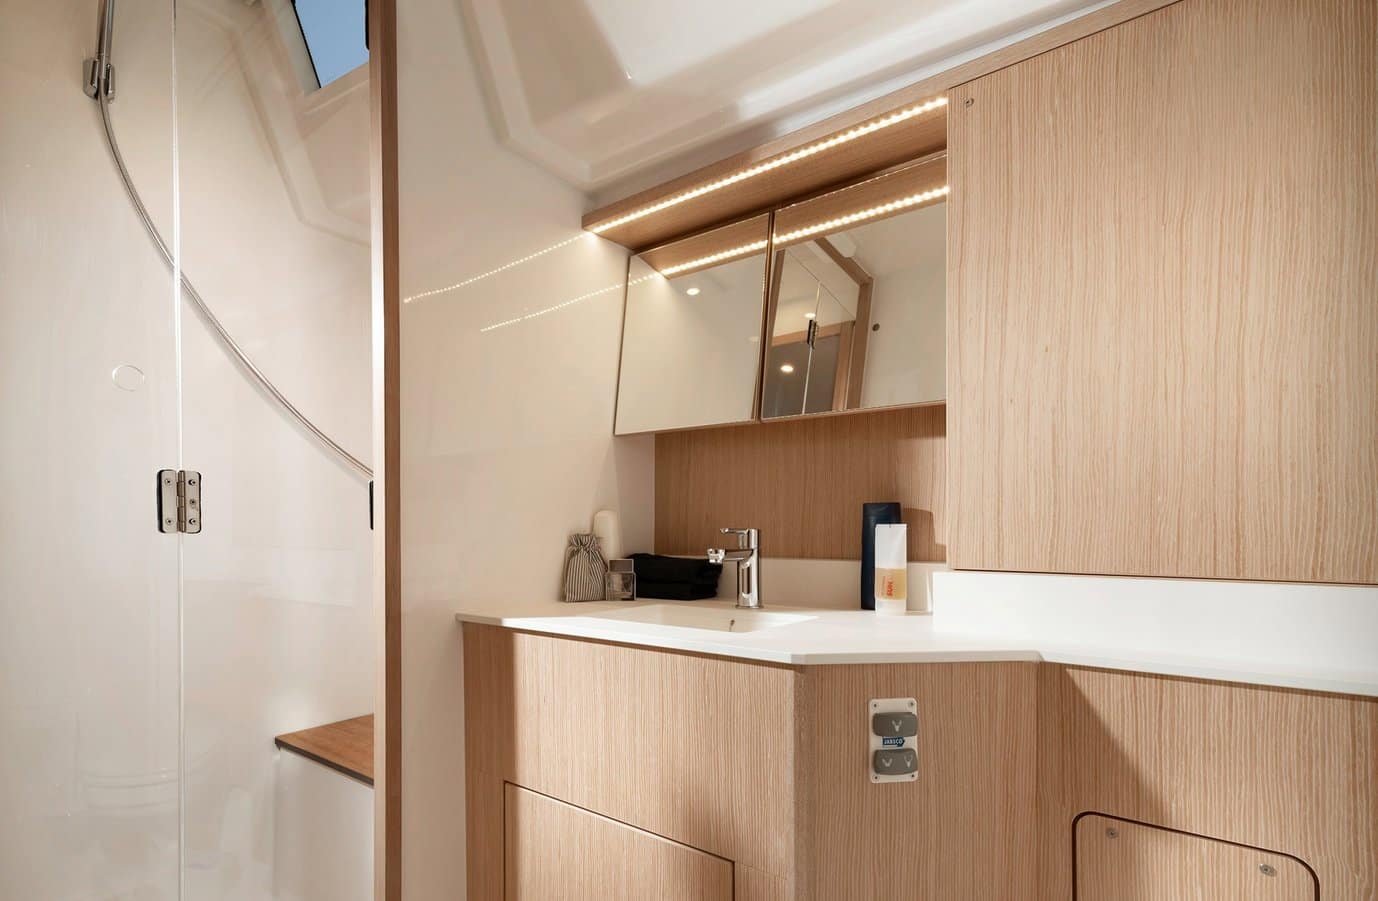 Modernes Badezimmer-Interieur in einer Segelyacht mit hellen Holzpaneelen, einer schlichten weißen Waschtischplatte mit Waschbecken, einem Spiegelschrank und dezenter Beleuchtung.